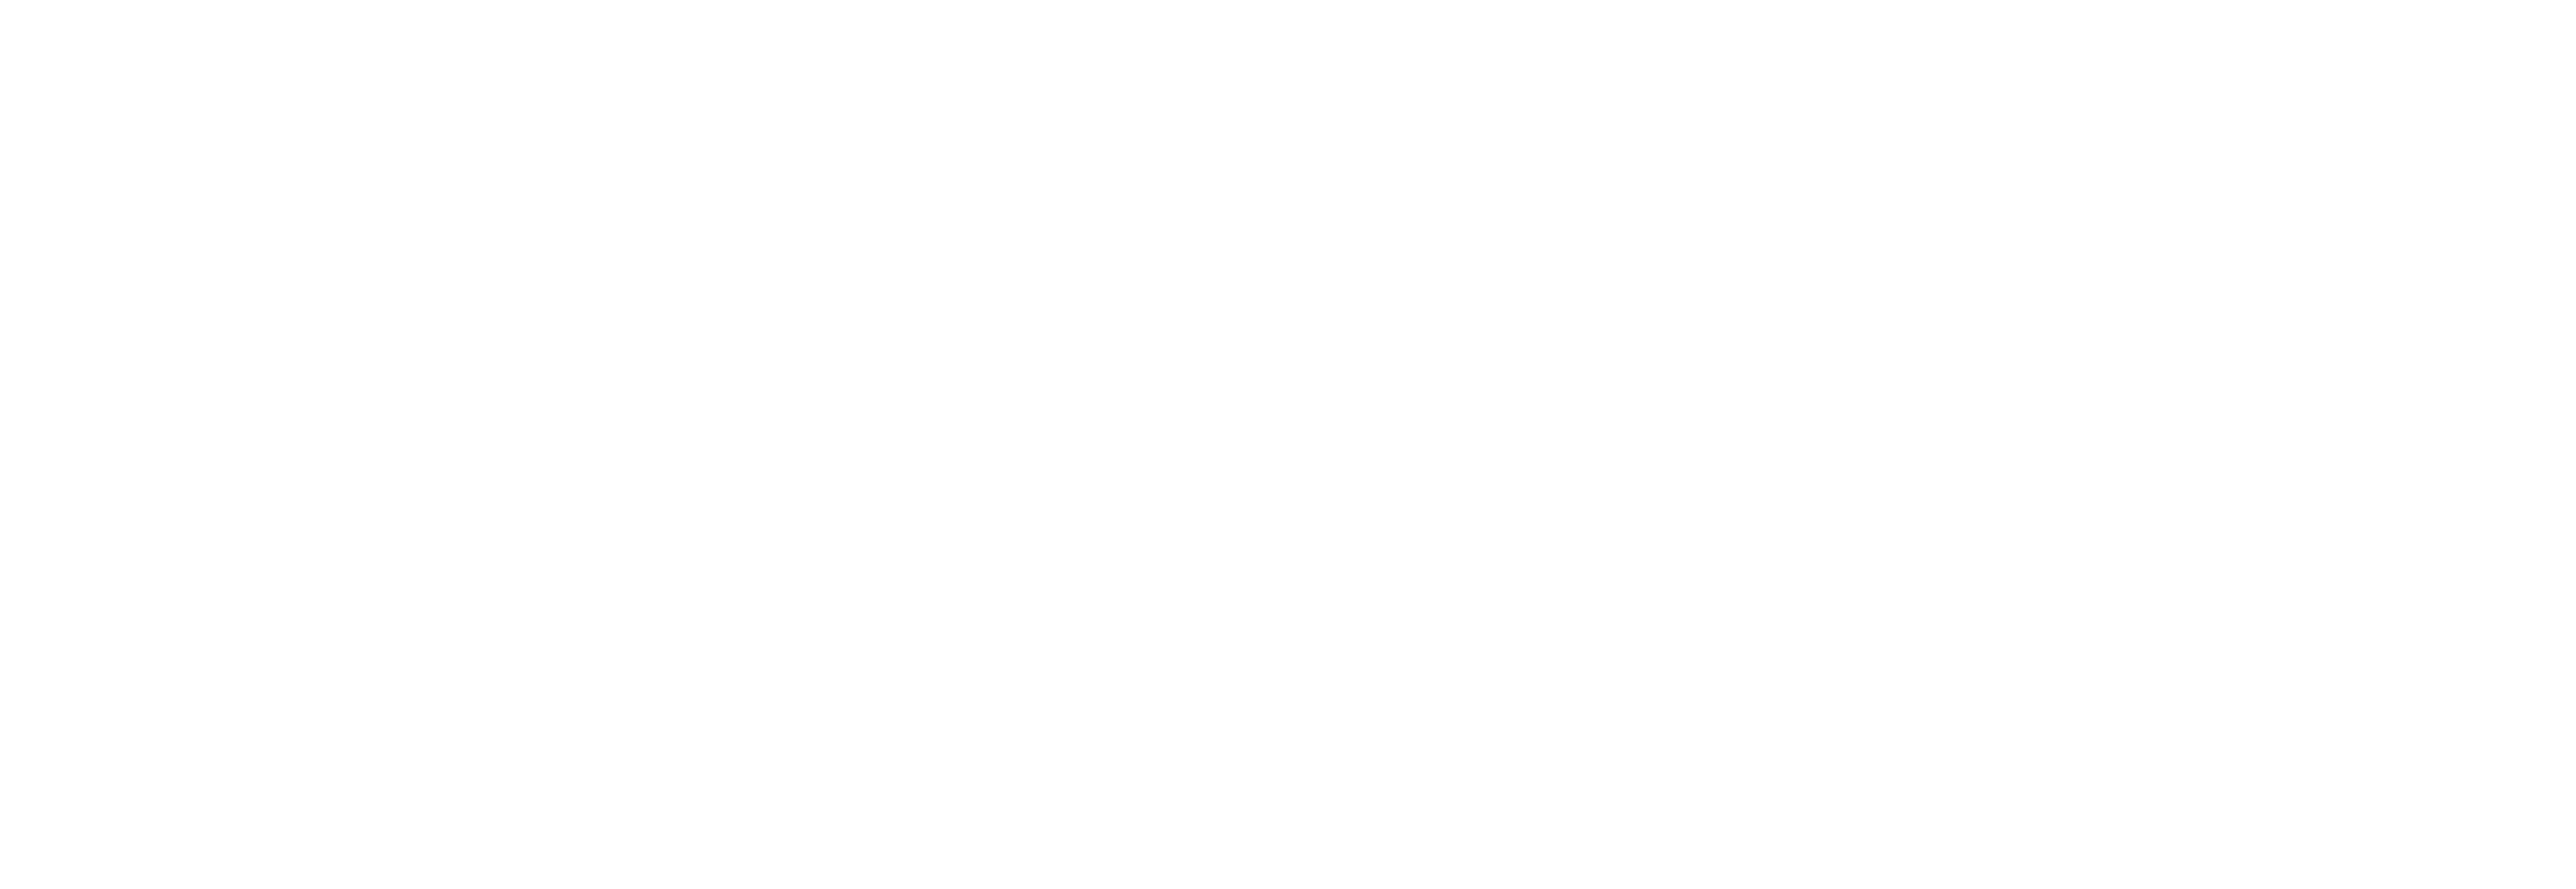 Netzwoche-logo-01